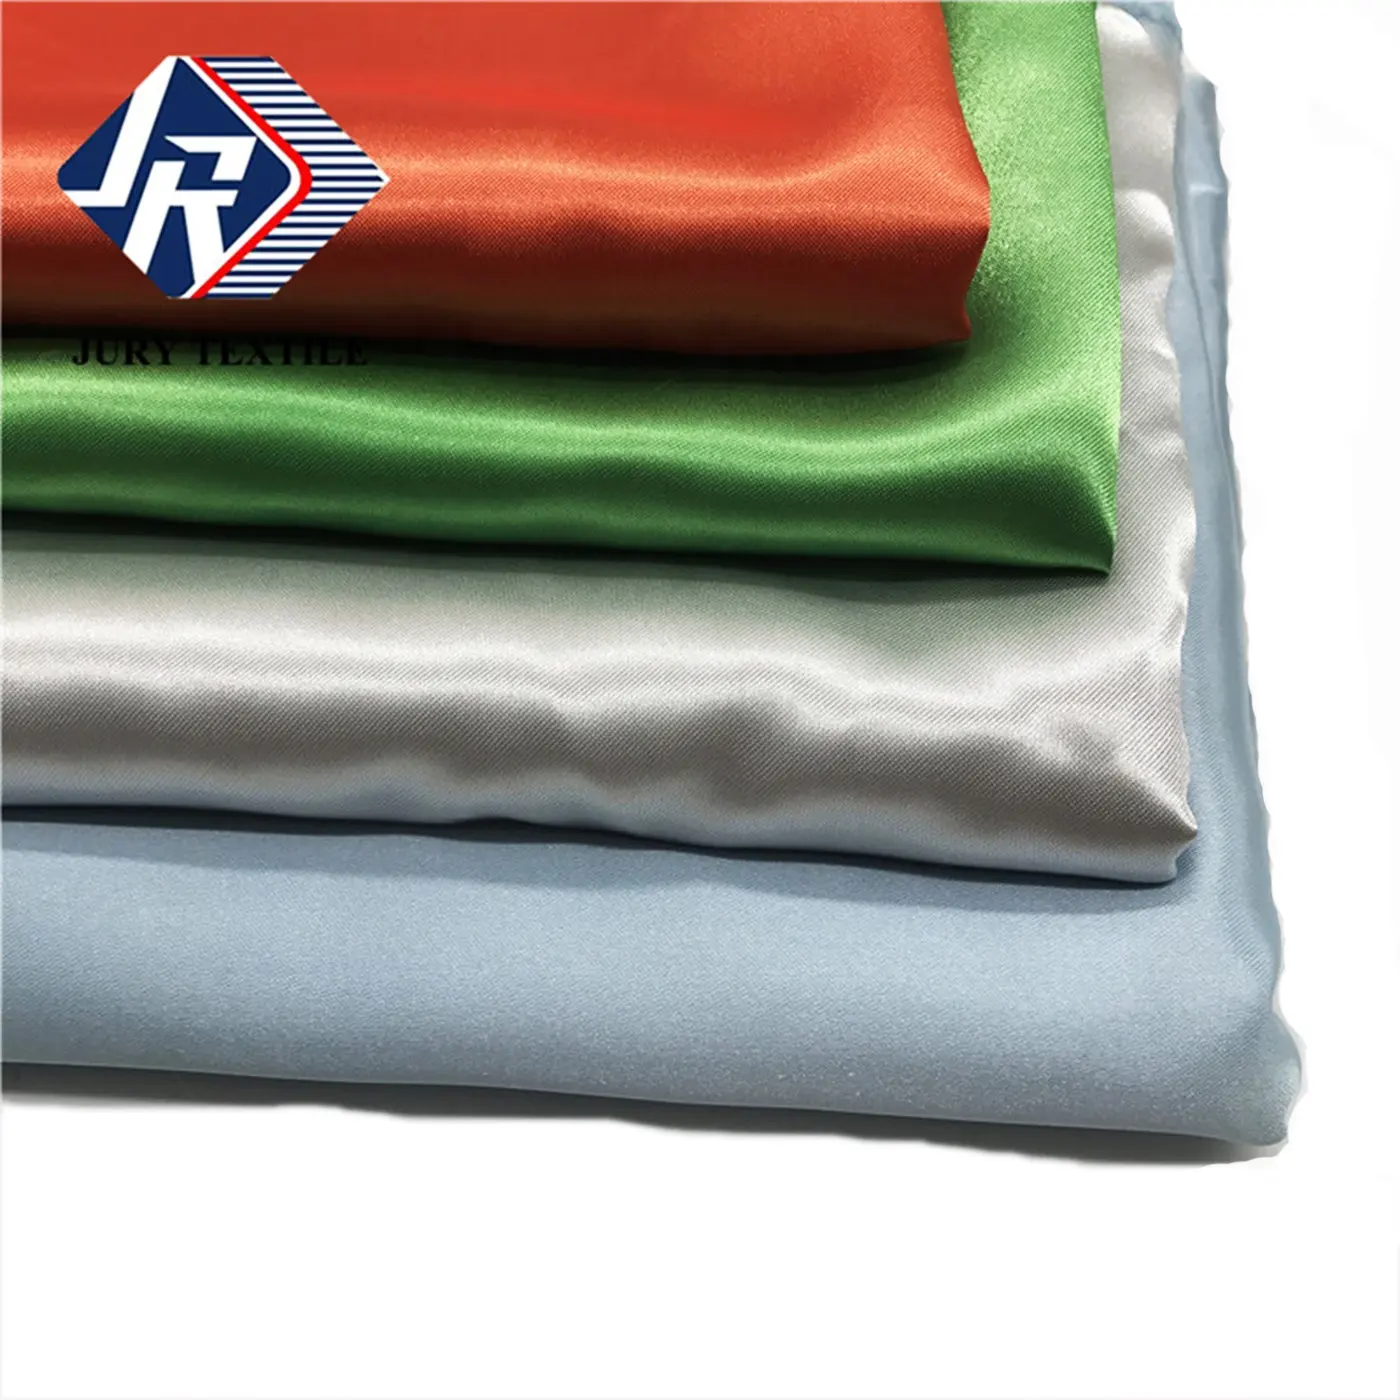 滑らかなタッチスカーフカーテン75d * 150d 100% ポリエステル平織りソフトサテン生地衣類用